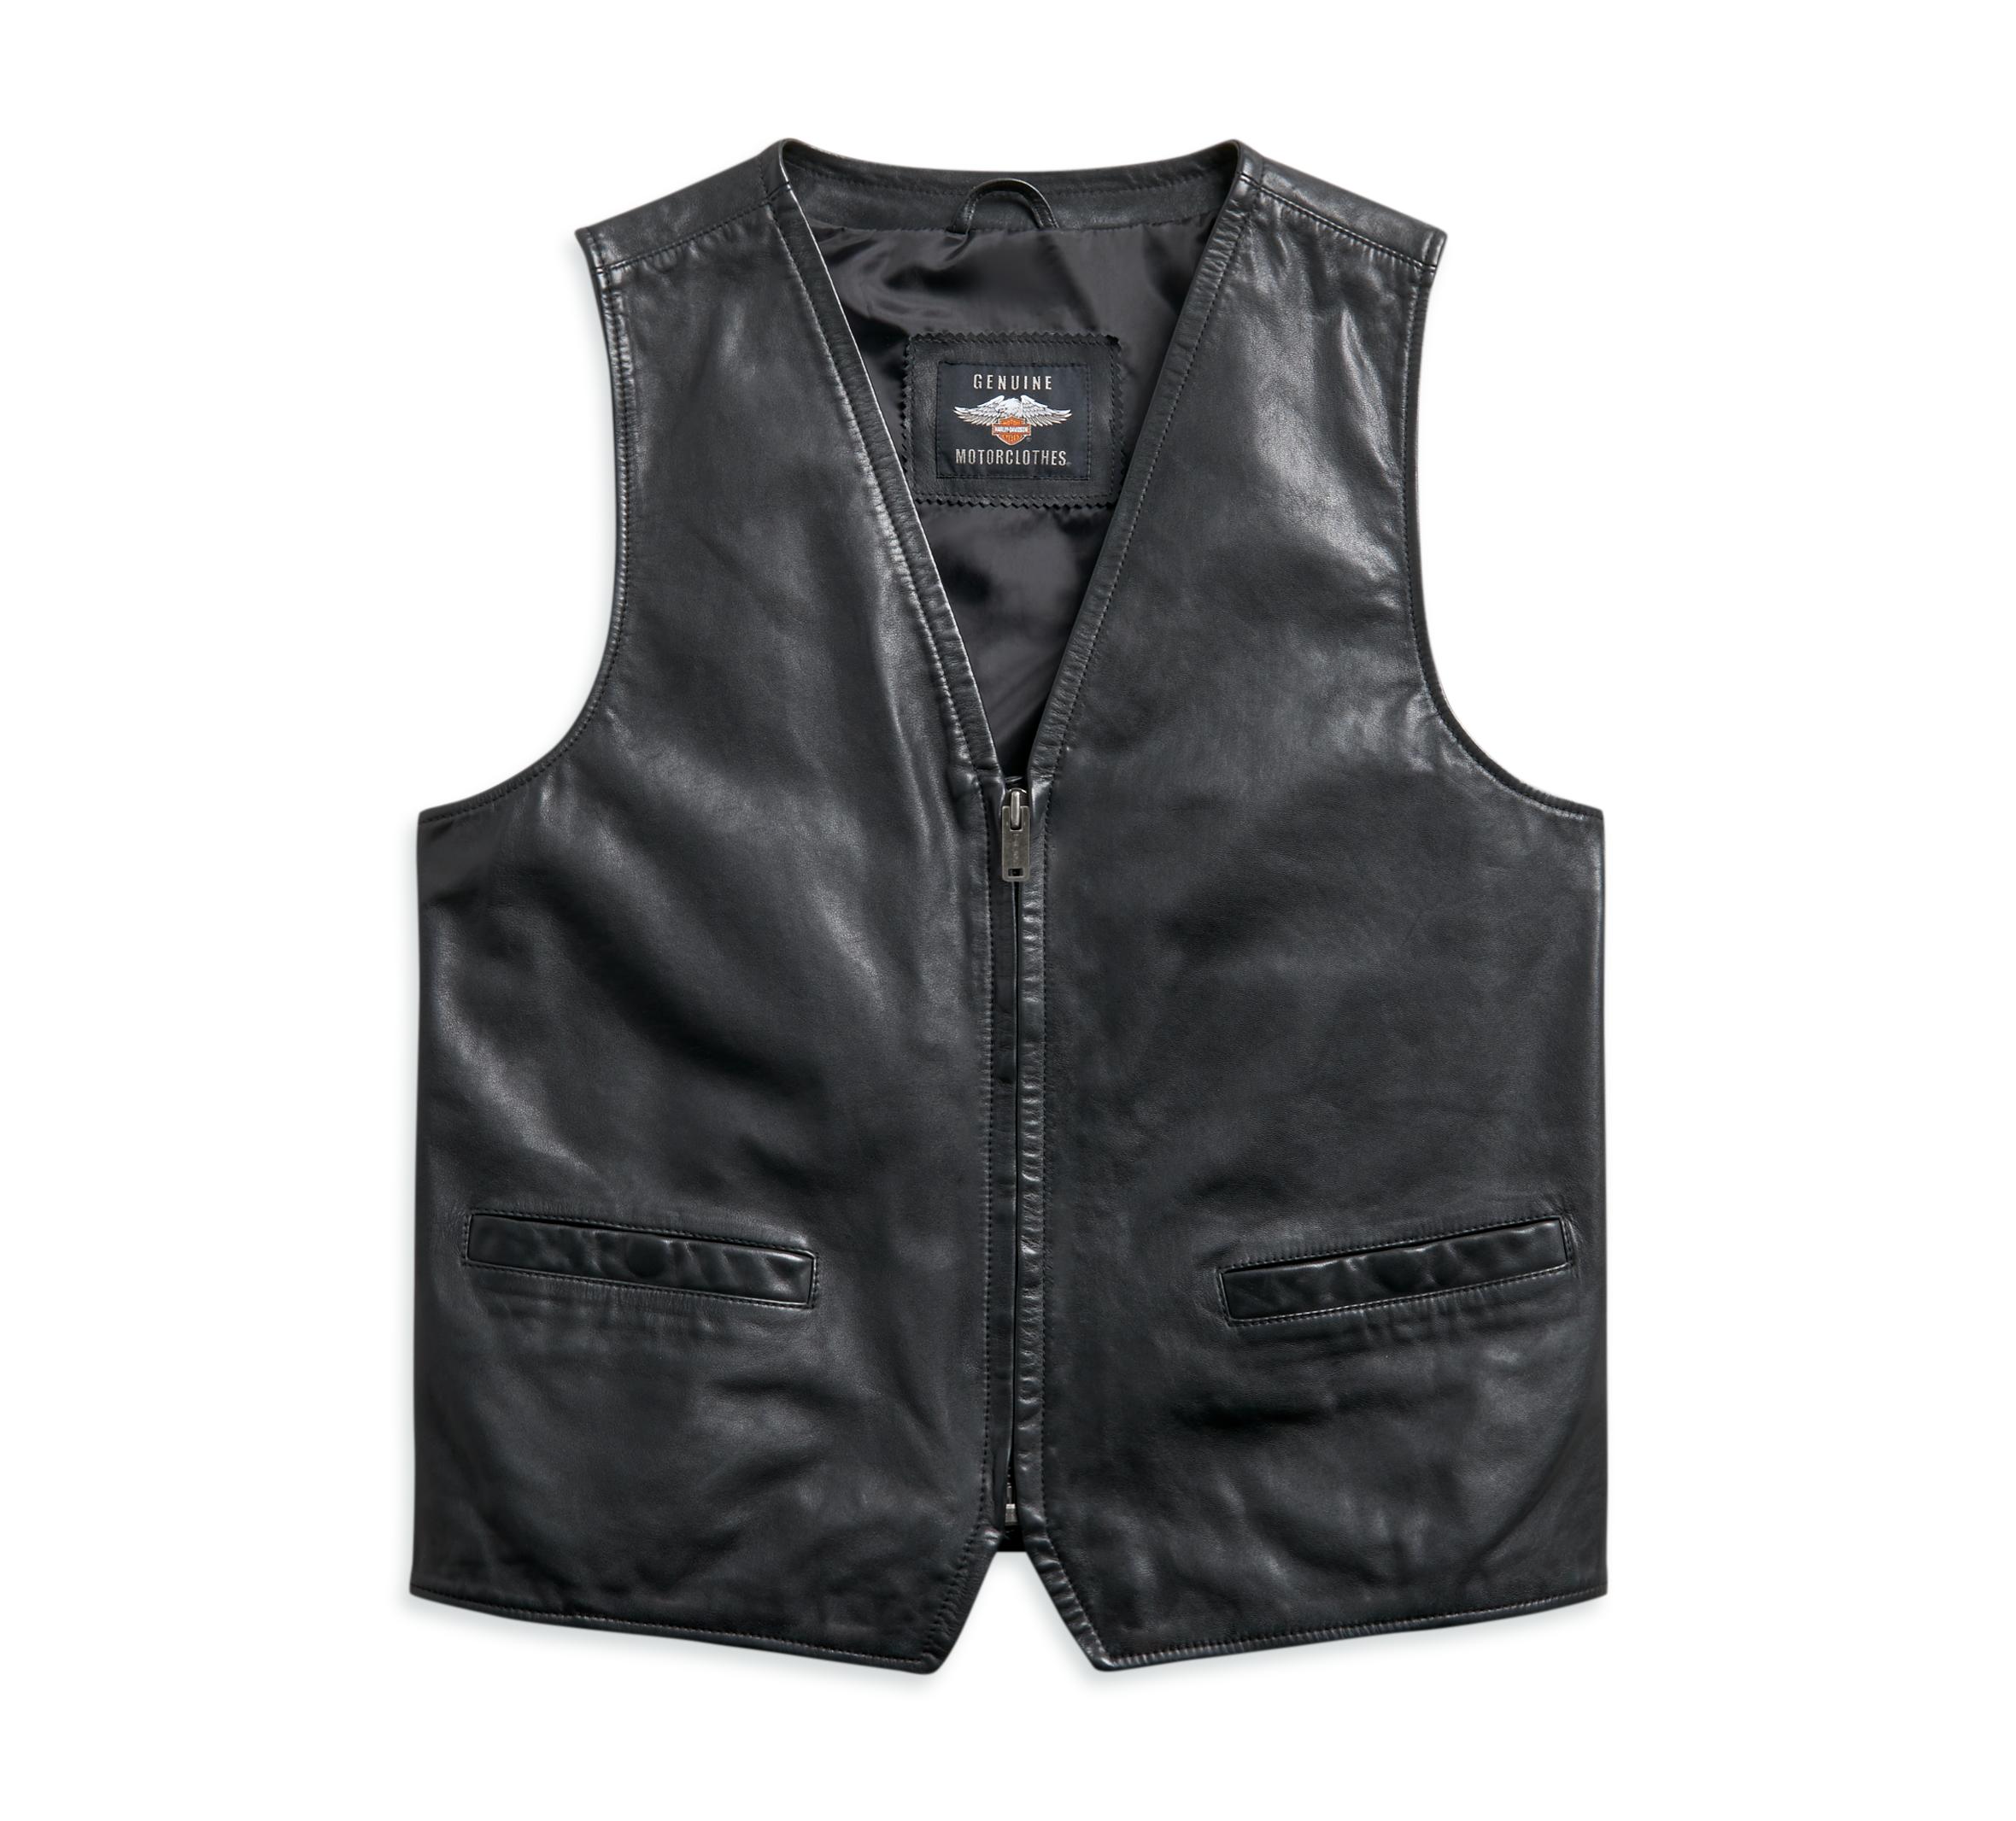 Harley-Davidson Men's Leather Vest - 97010-21VM